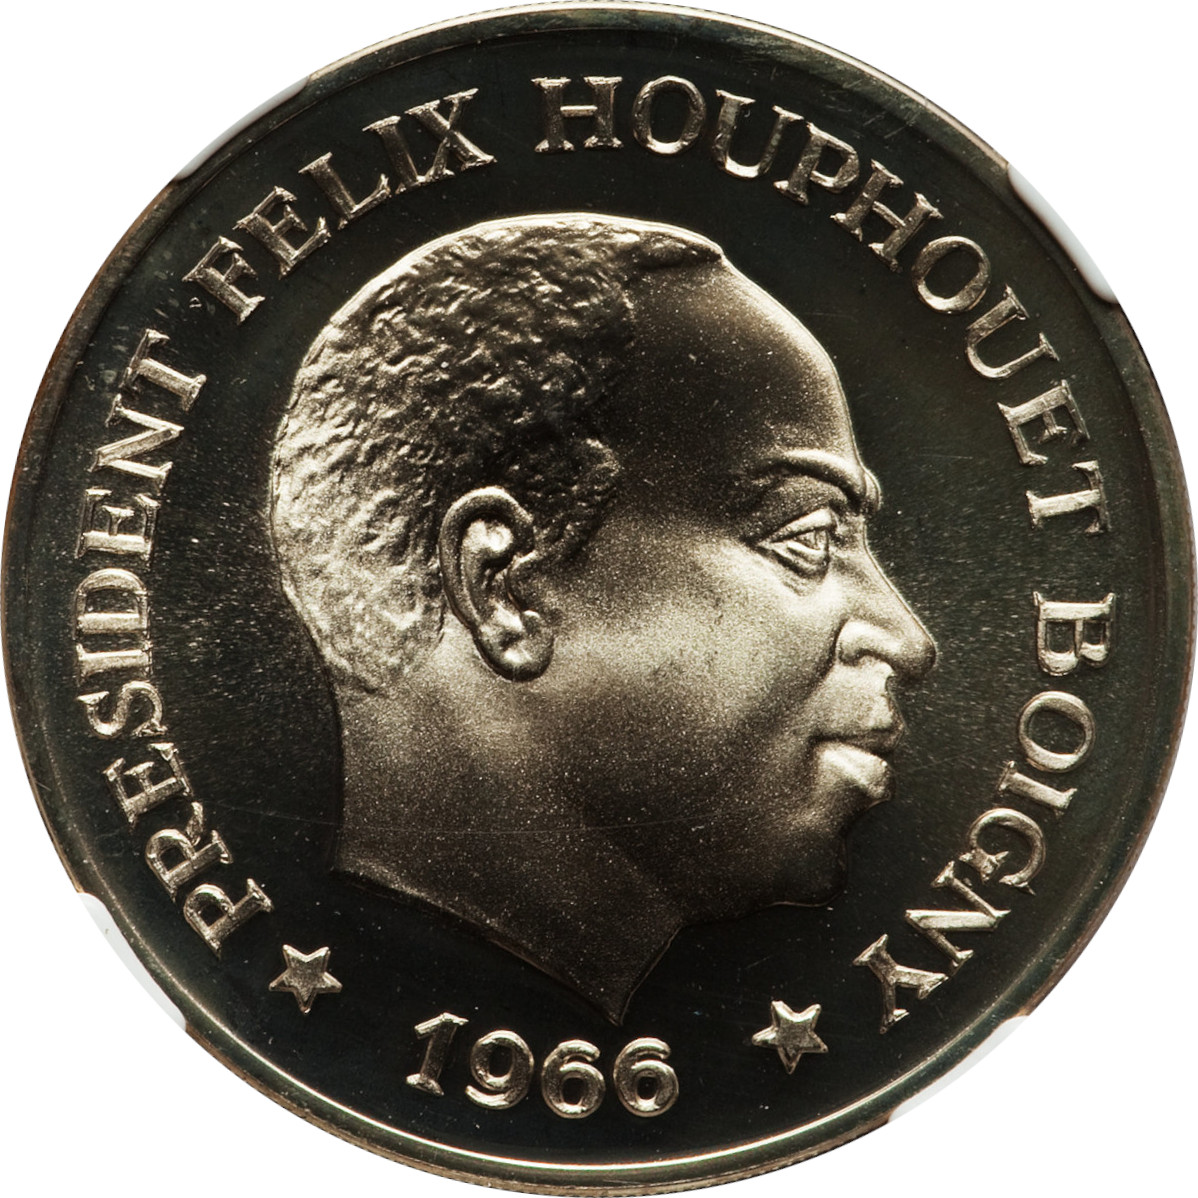 10 francs - Président Félix Houphouet Boigny